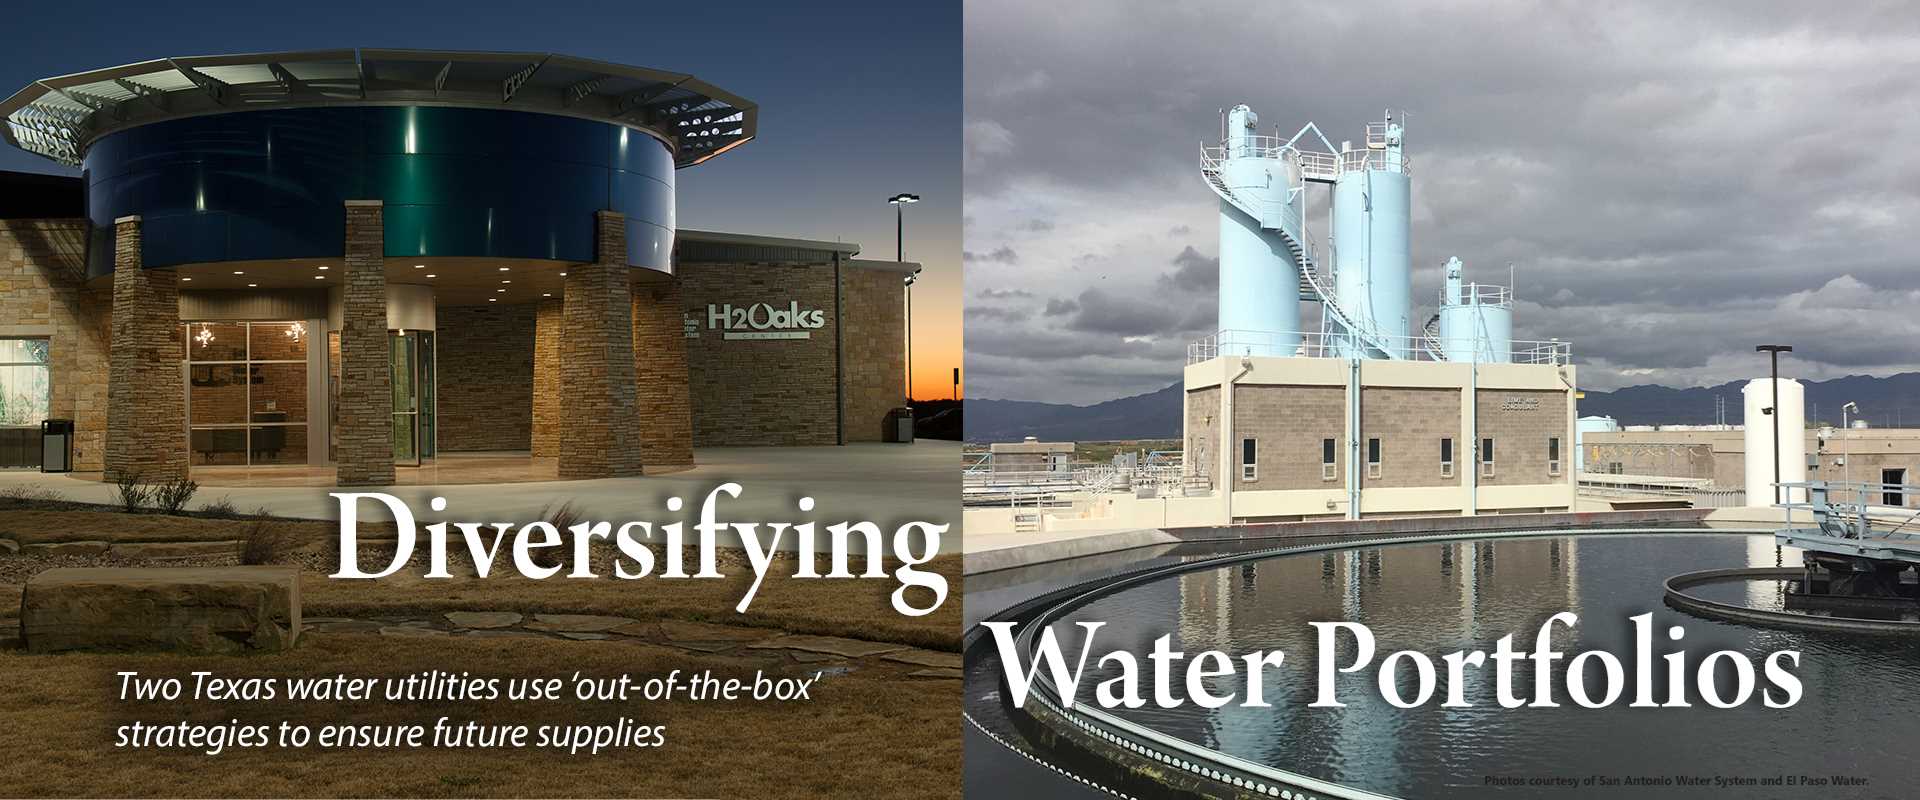 Diversifying water portfolios